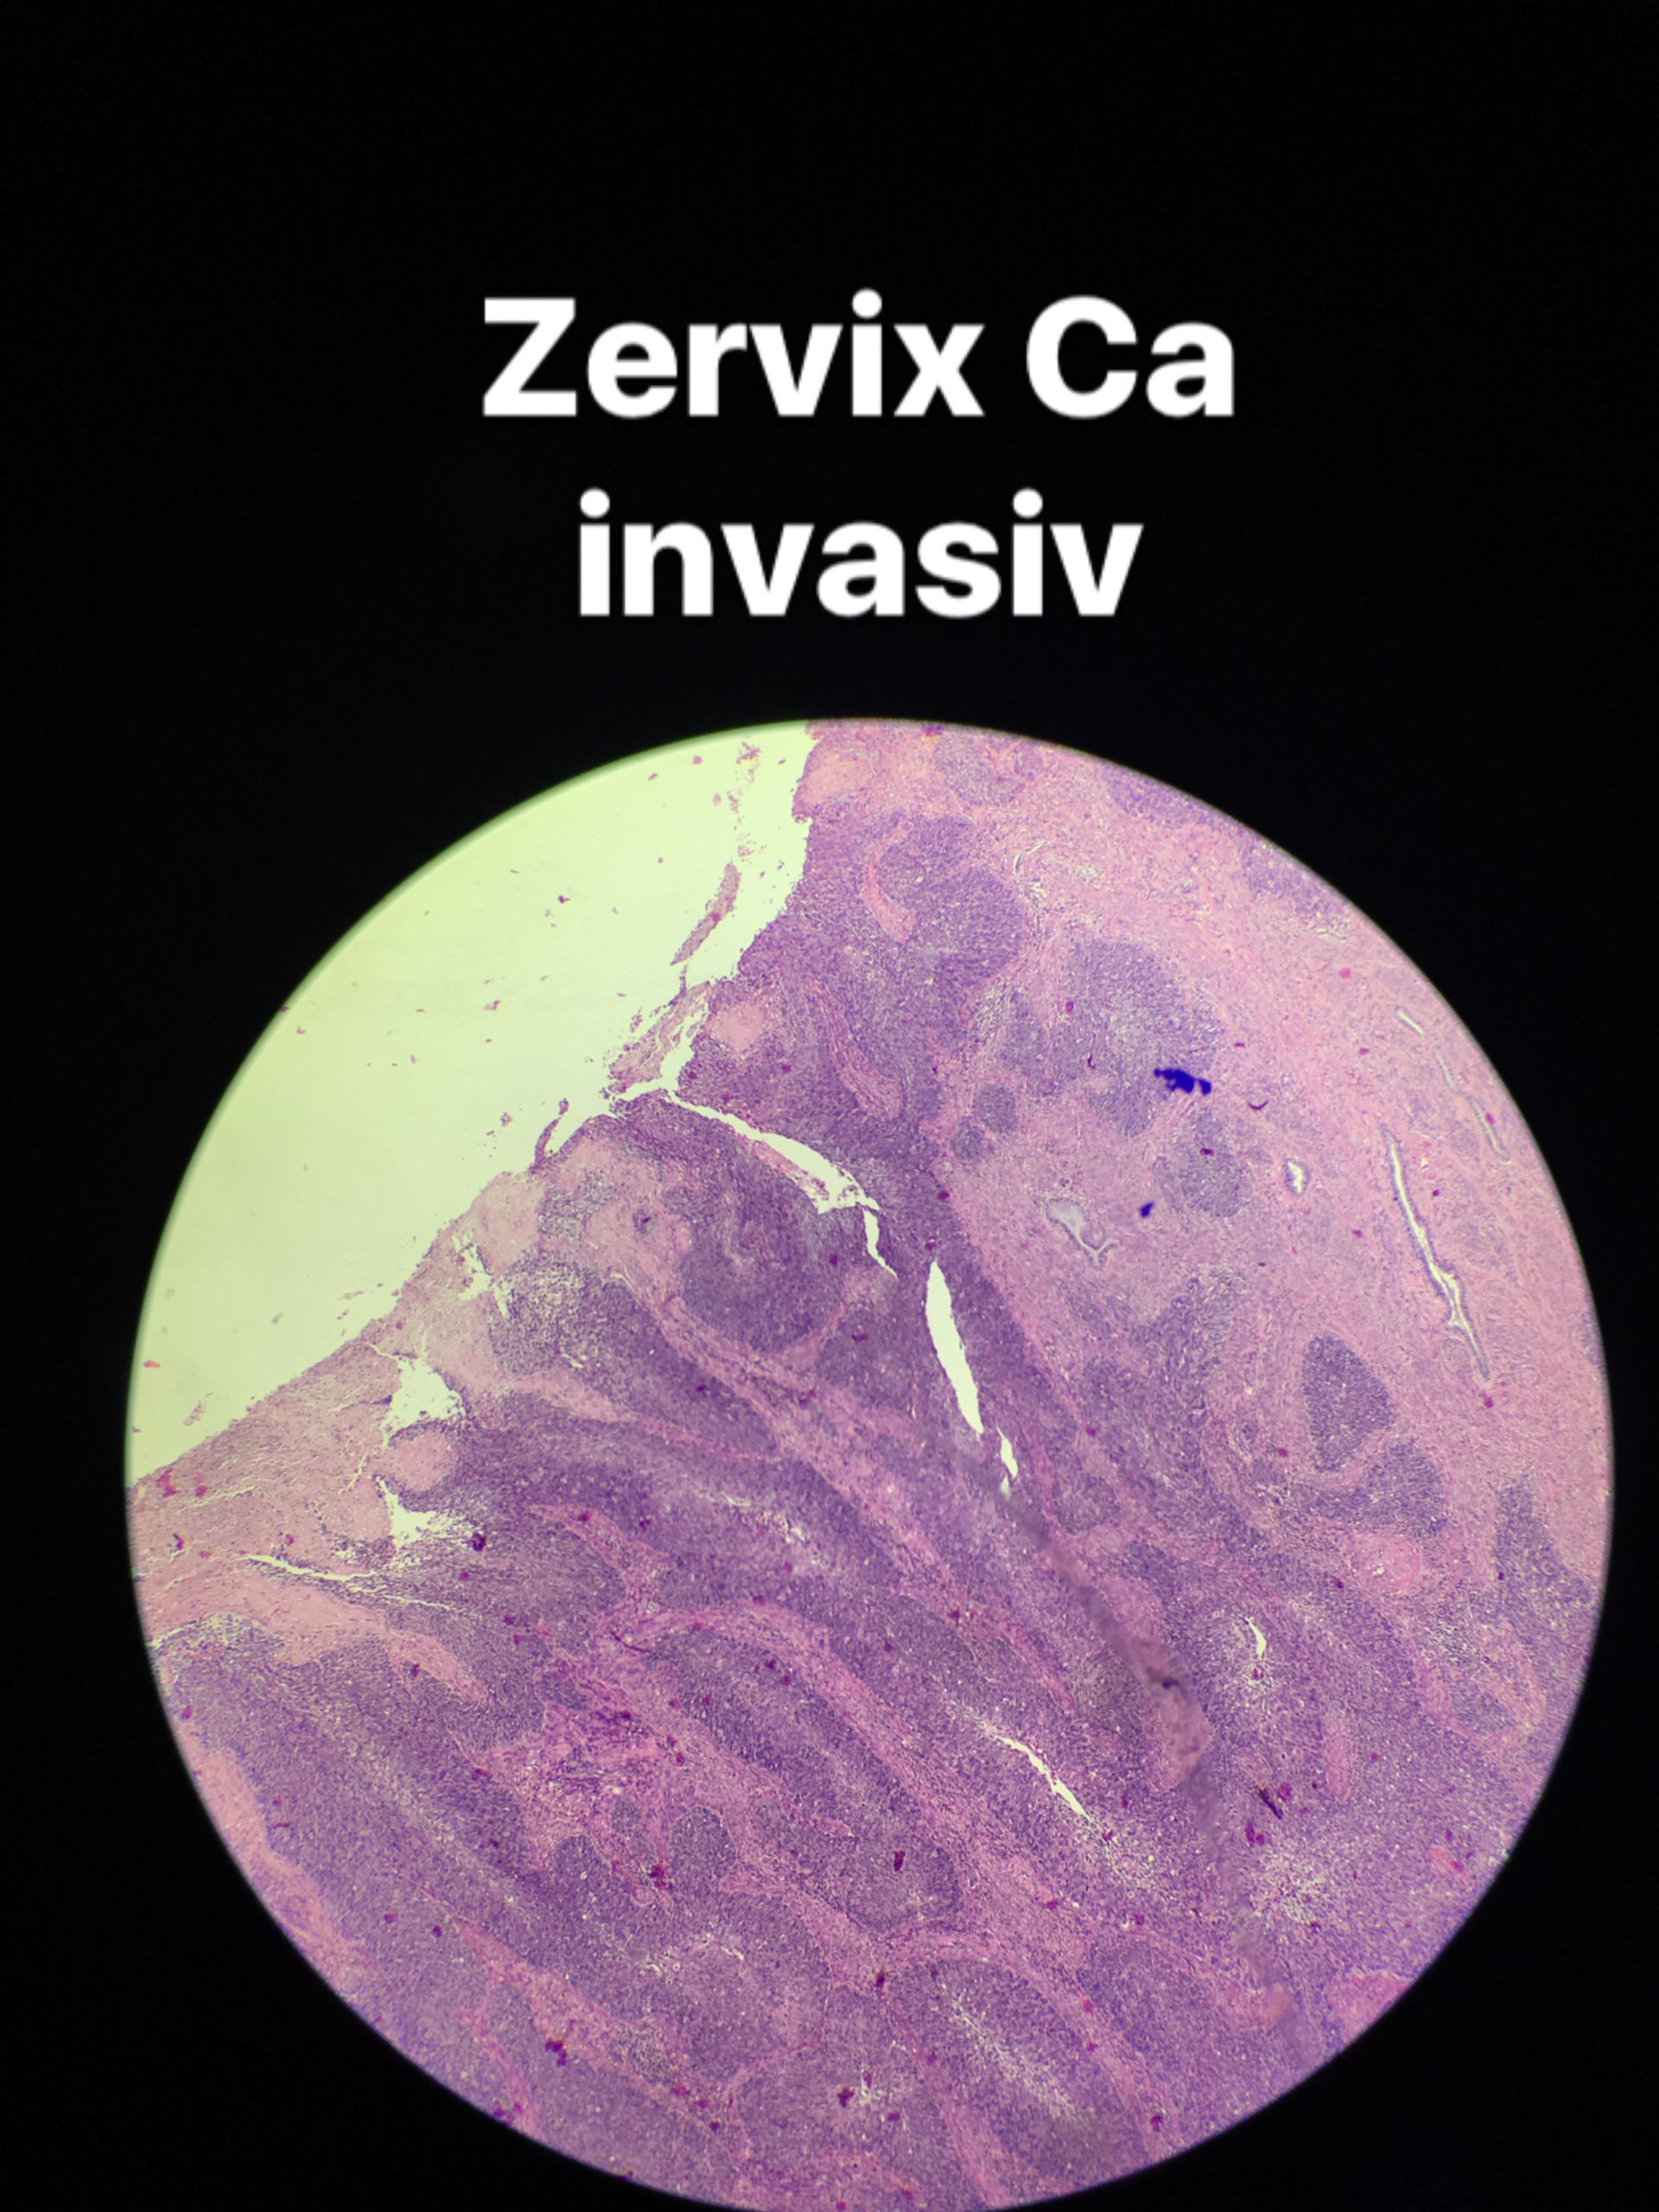 Zervix Cainvasiv